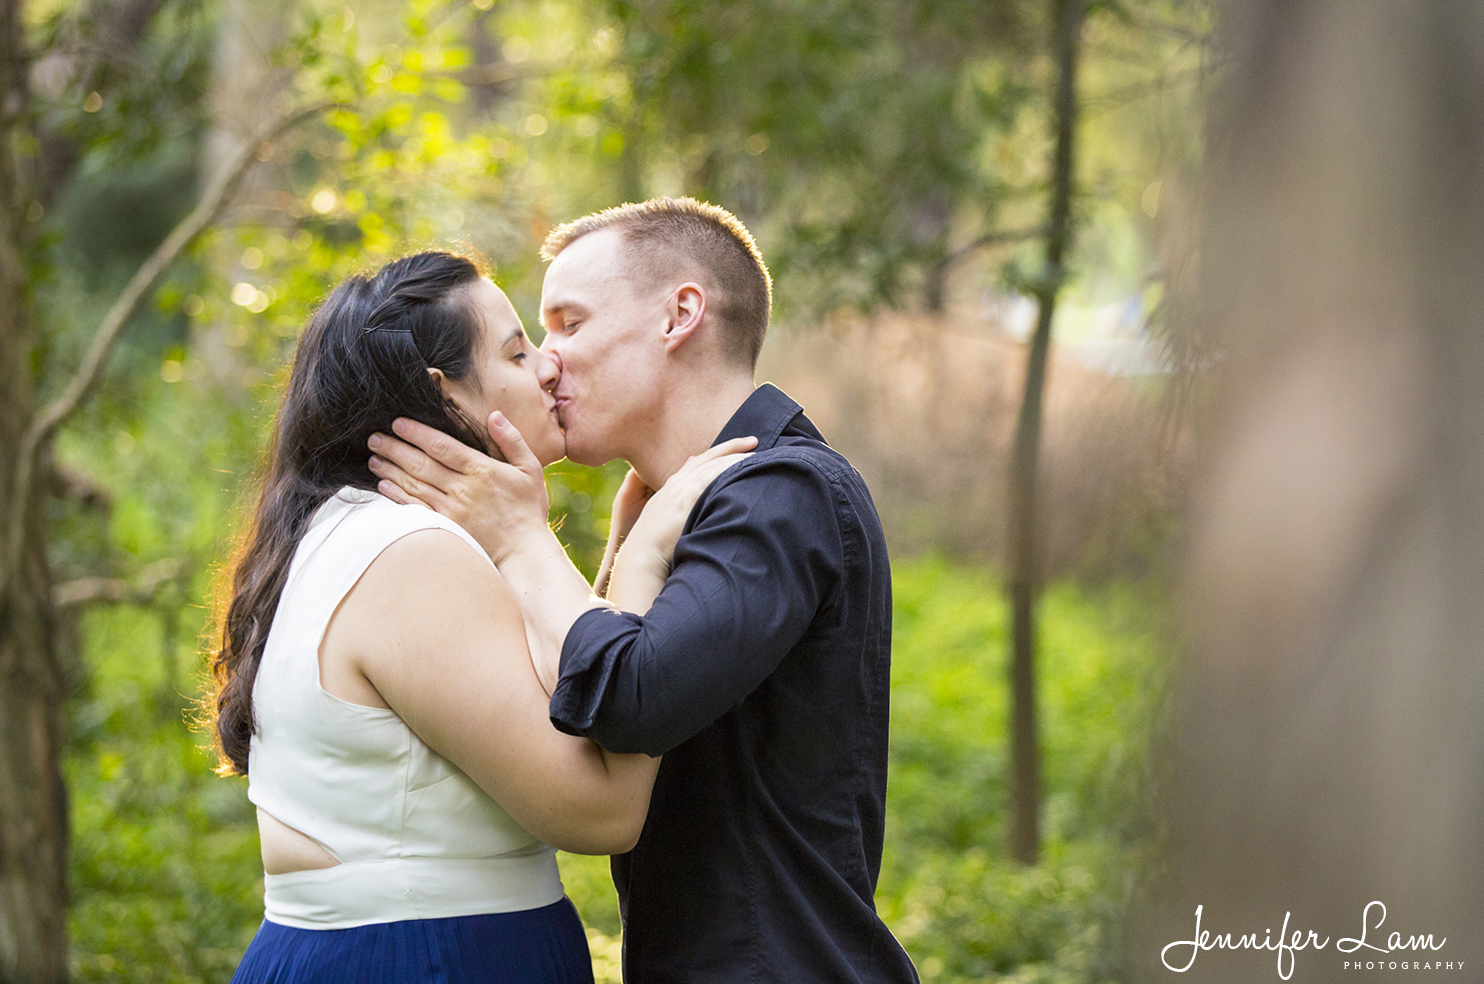 Engagement Session - Sydney Wedding Photographer - Jennifer Lam Photography (11).jpg